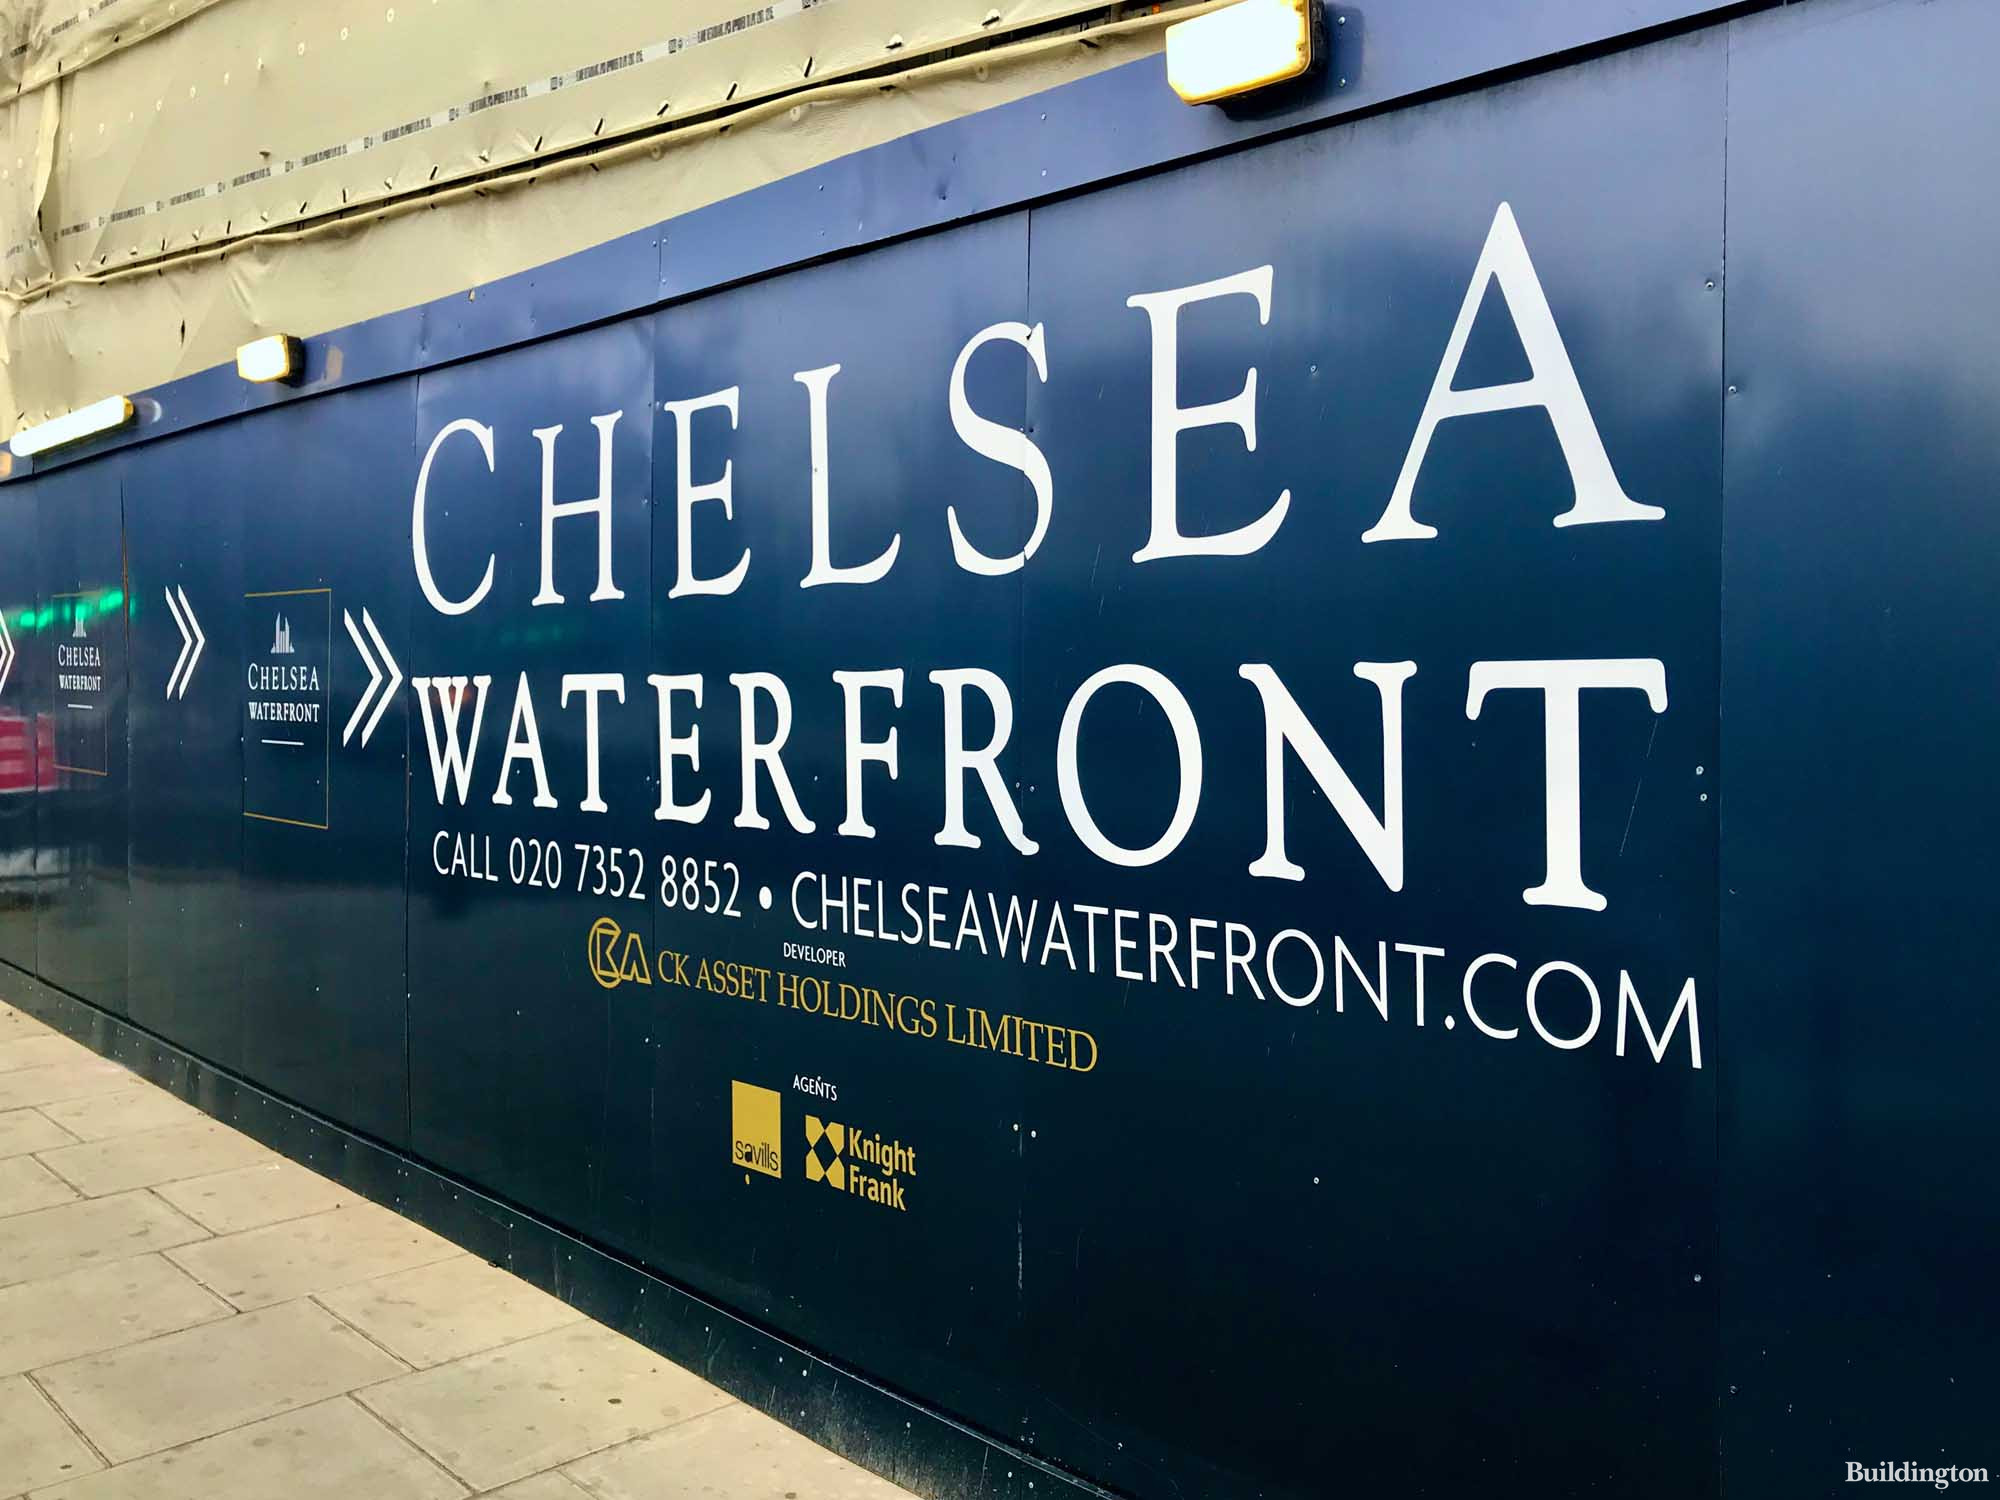 Chelsea Waterfront development hoarding